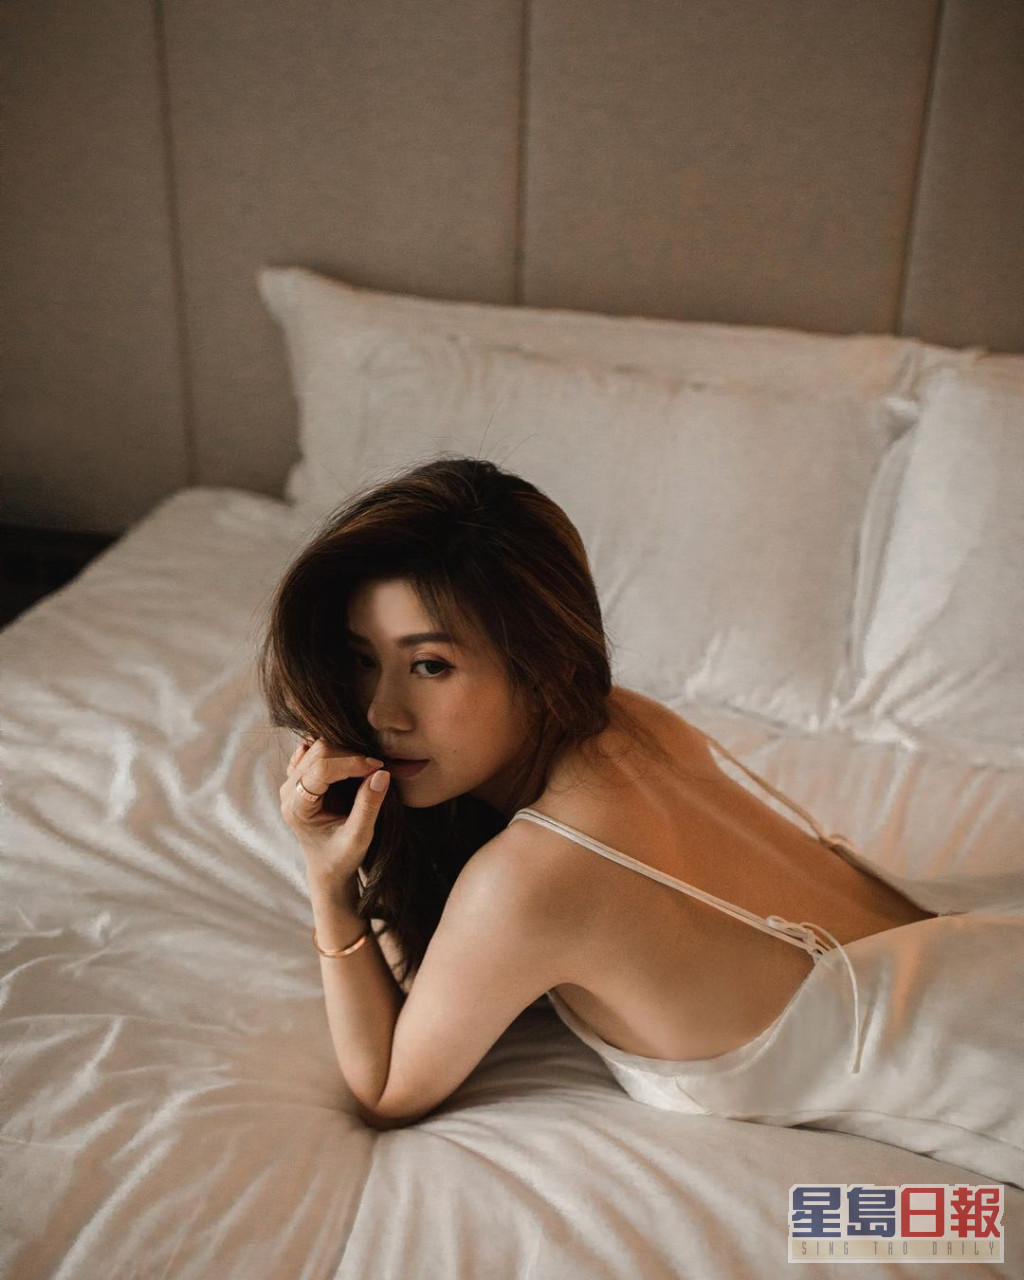 张美妮也经常分享性感照。